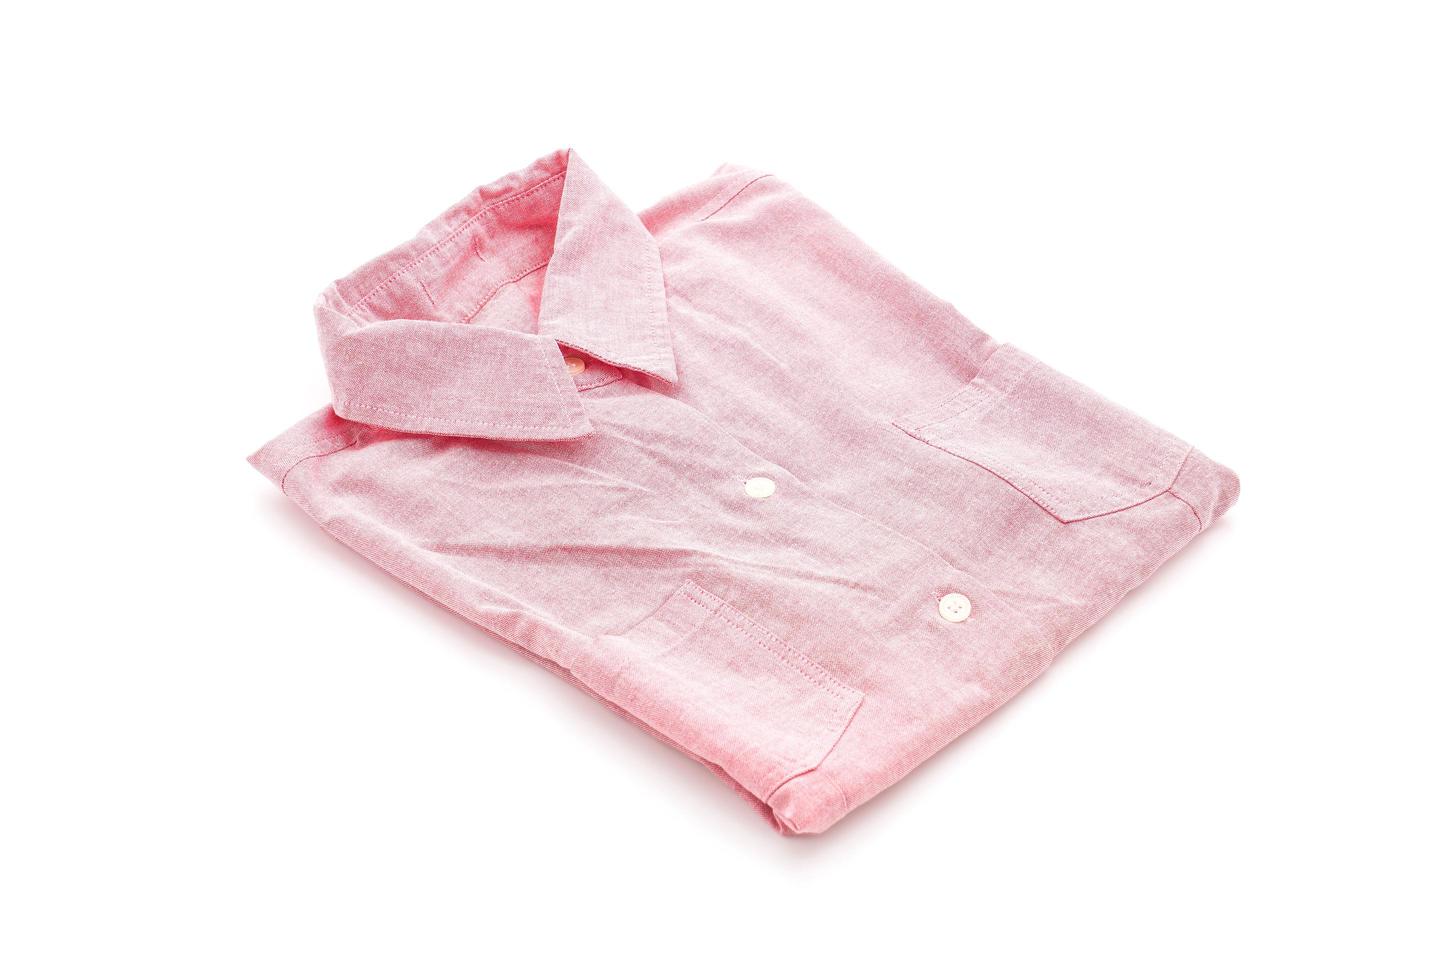 Pink shirt folded on white background photo